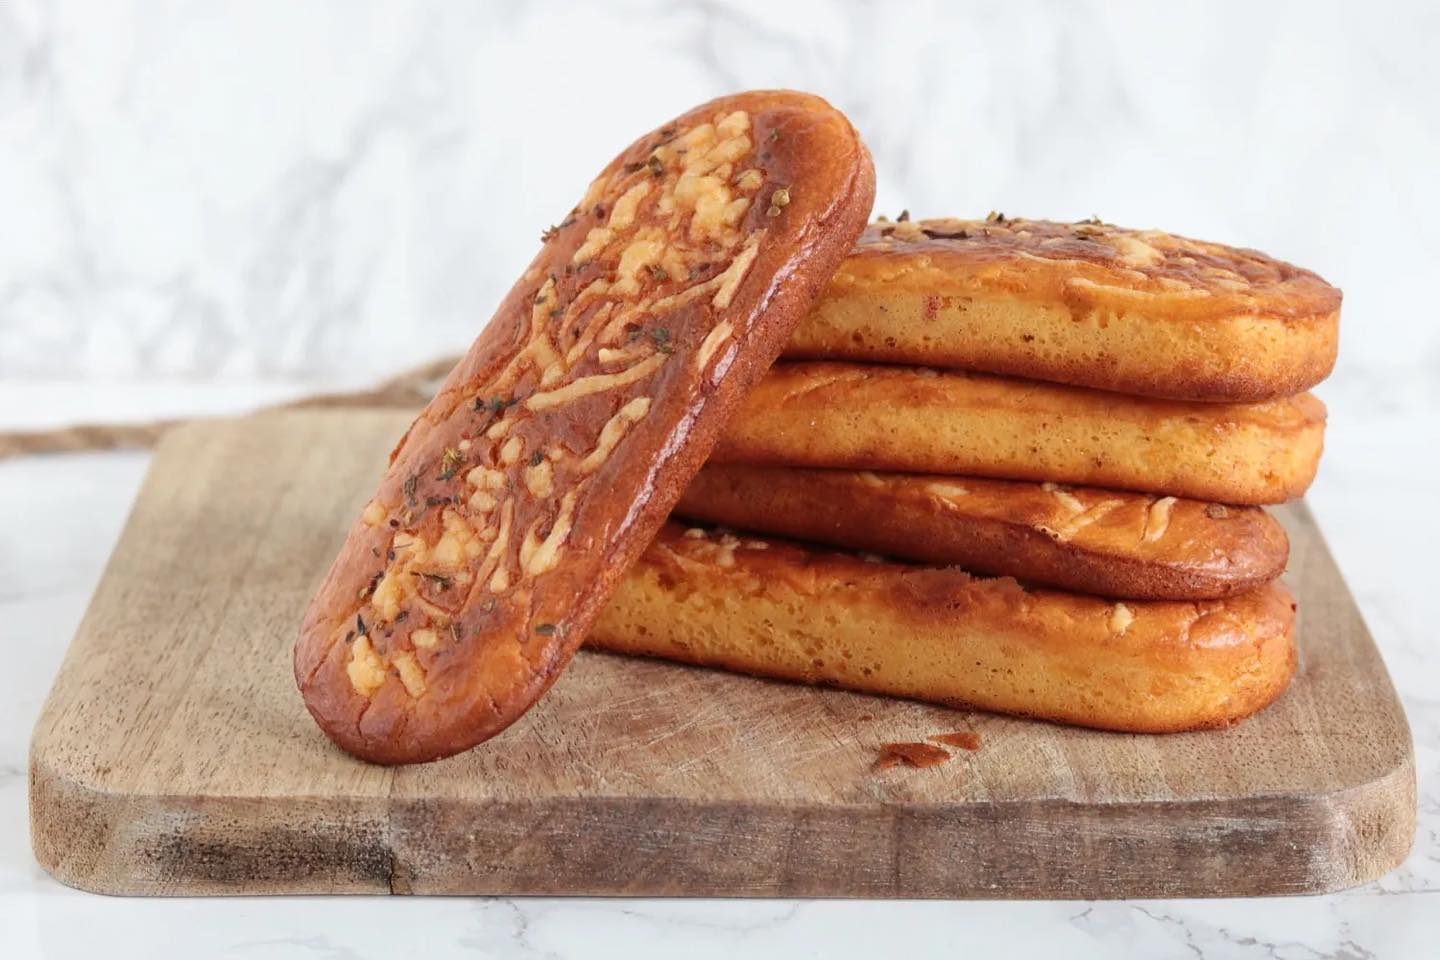 Deze broodjes zijn heerlijk smaakvol, lekker gekruid en ideaal om van tevoren te maken en in te vriezen voor de drukkere dagen 🥰 Ze zijn ook makkelijk om te maken en easy om te twisten naar je eigen smaak. 🥖 Heb jij ze al eens gemaakt? X het recept vind je op mijn website onder: Kruidige kaasbroodjes 💝 Fijne zondag! X #koolhydraatarm #lowcarb #oanhskitchen #keto